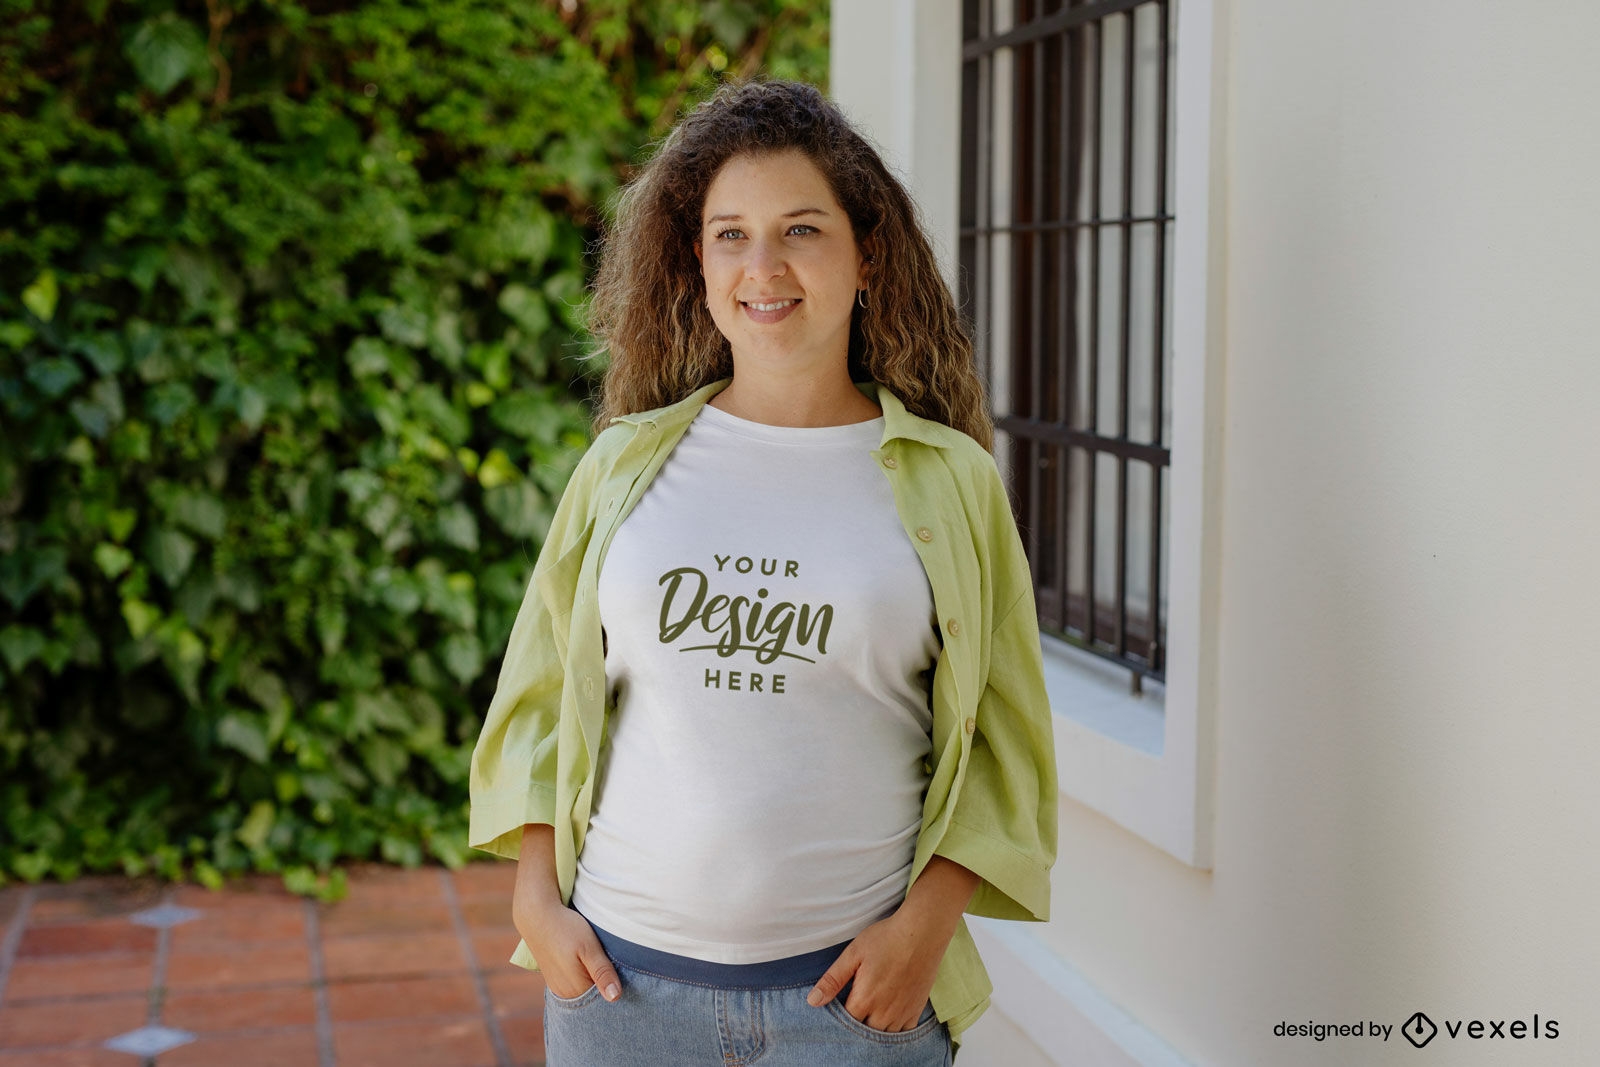 Mujer embarazada contra maqueta de camiseta de ventana